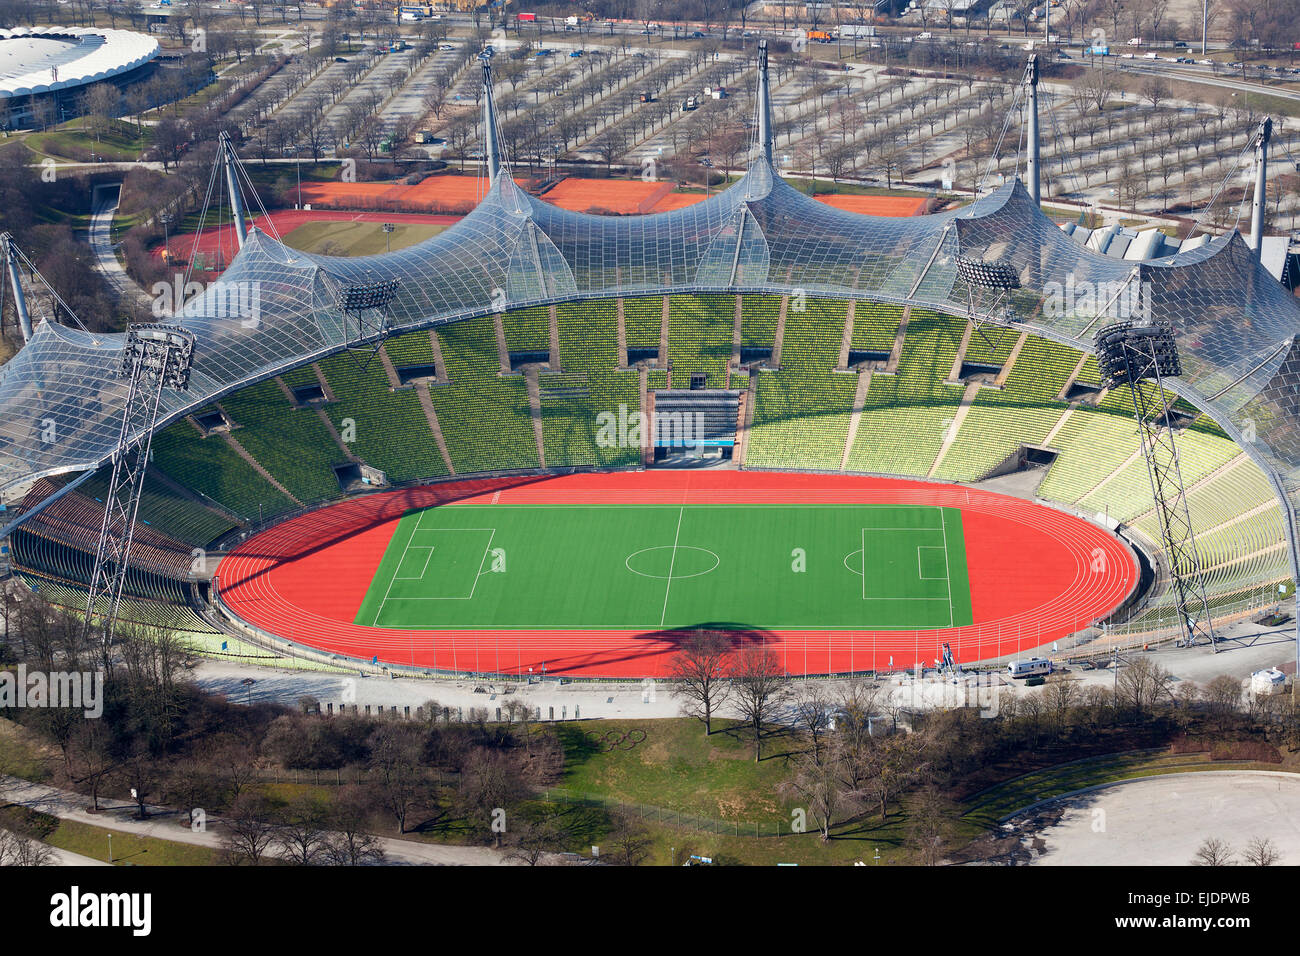 Lo stadio Olimpico di Monaco di Baviera in Germania Foto stock - Alamy